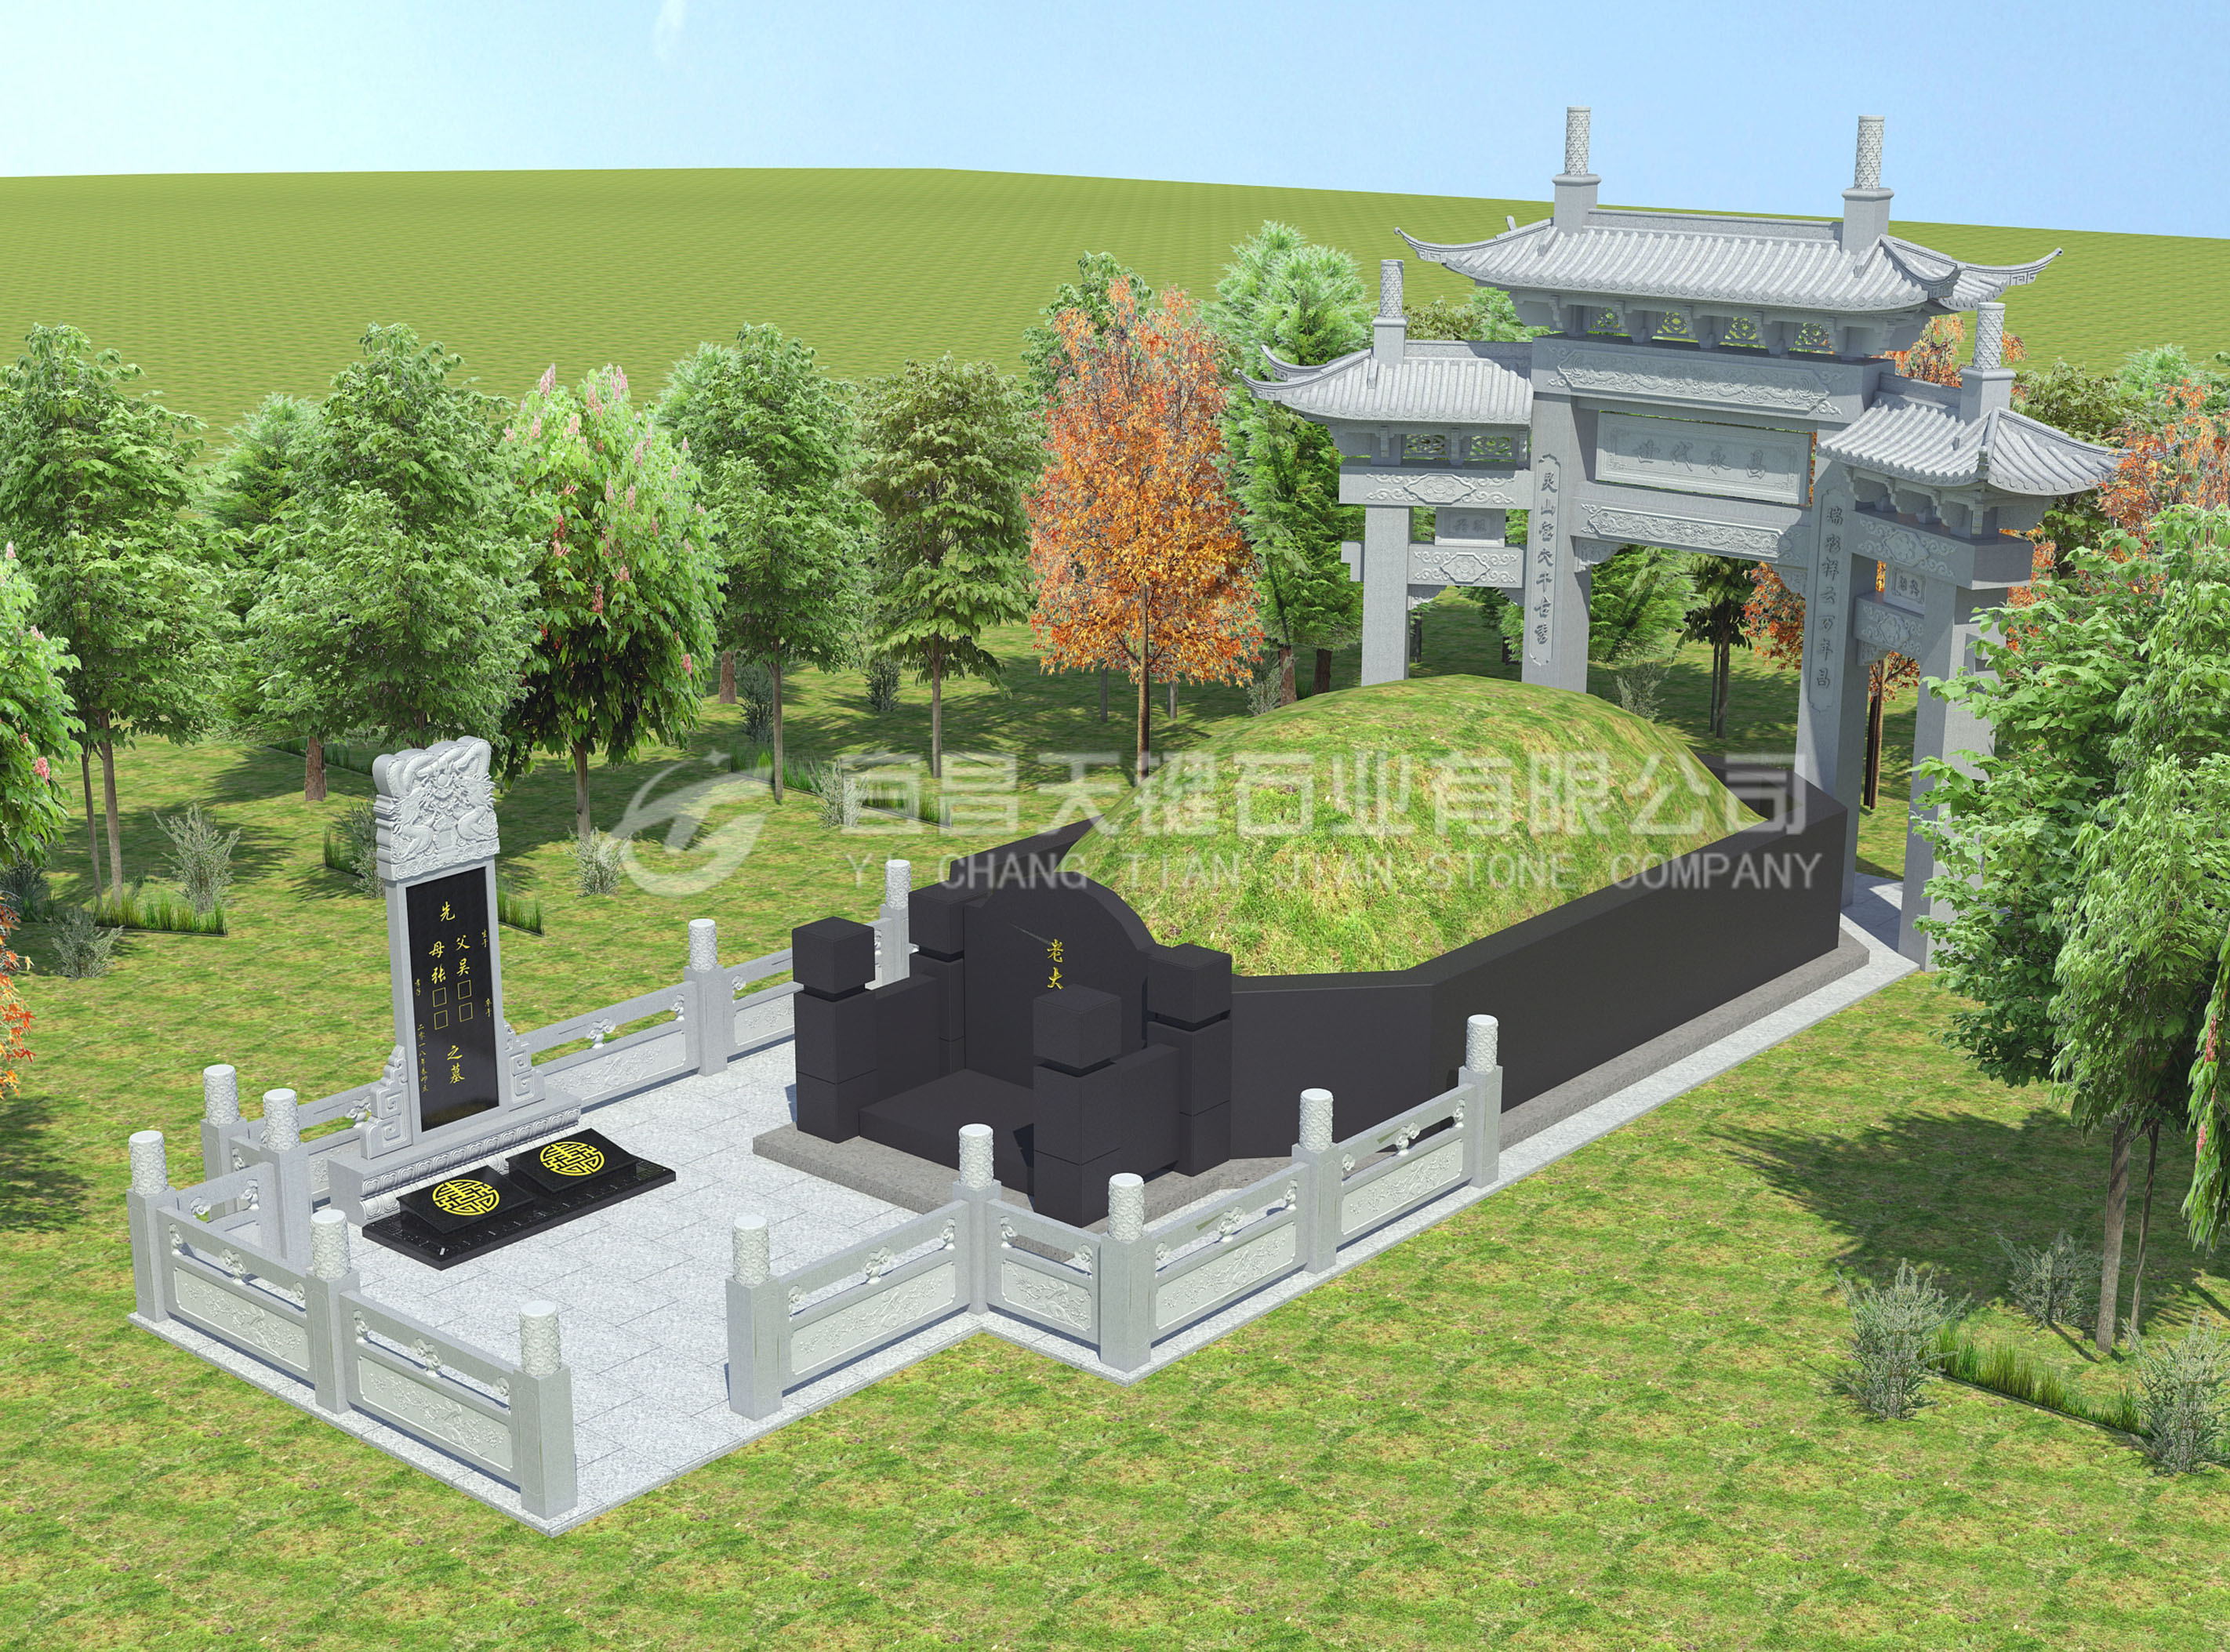 天堂公墓墓地图片,天堂公墓景观图在线查看_北京陵园网